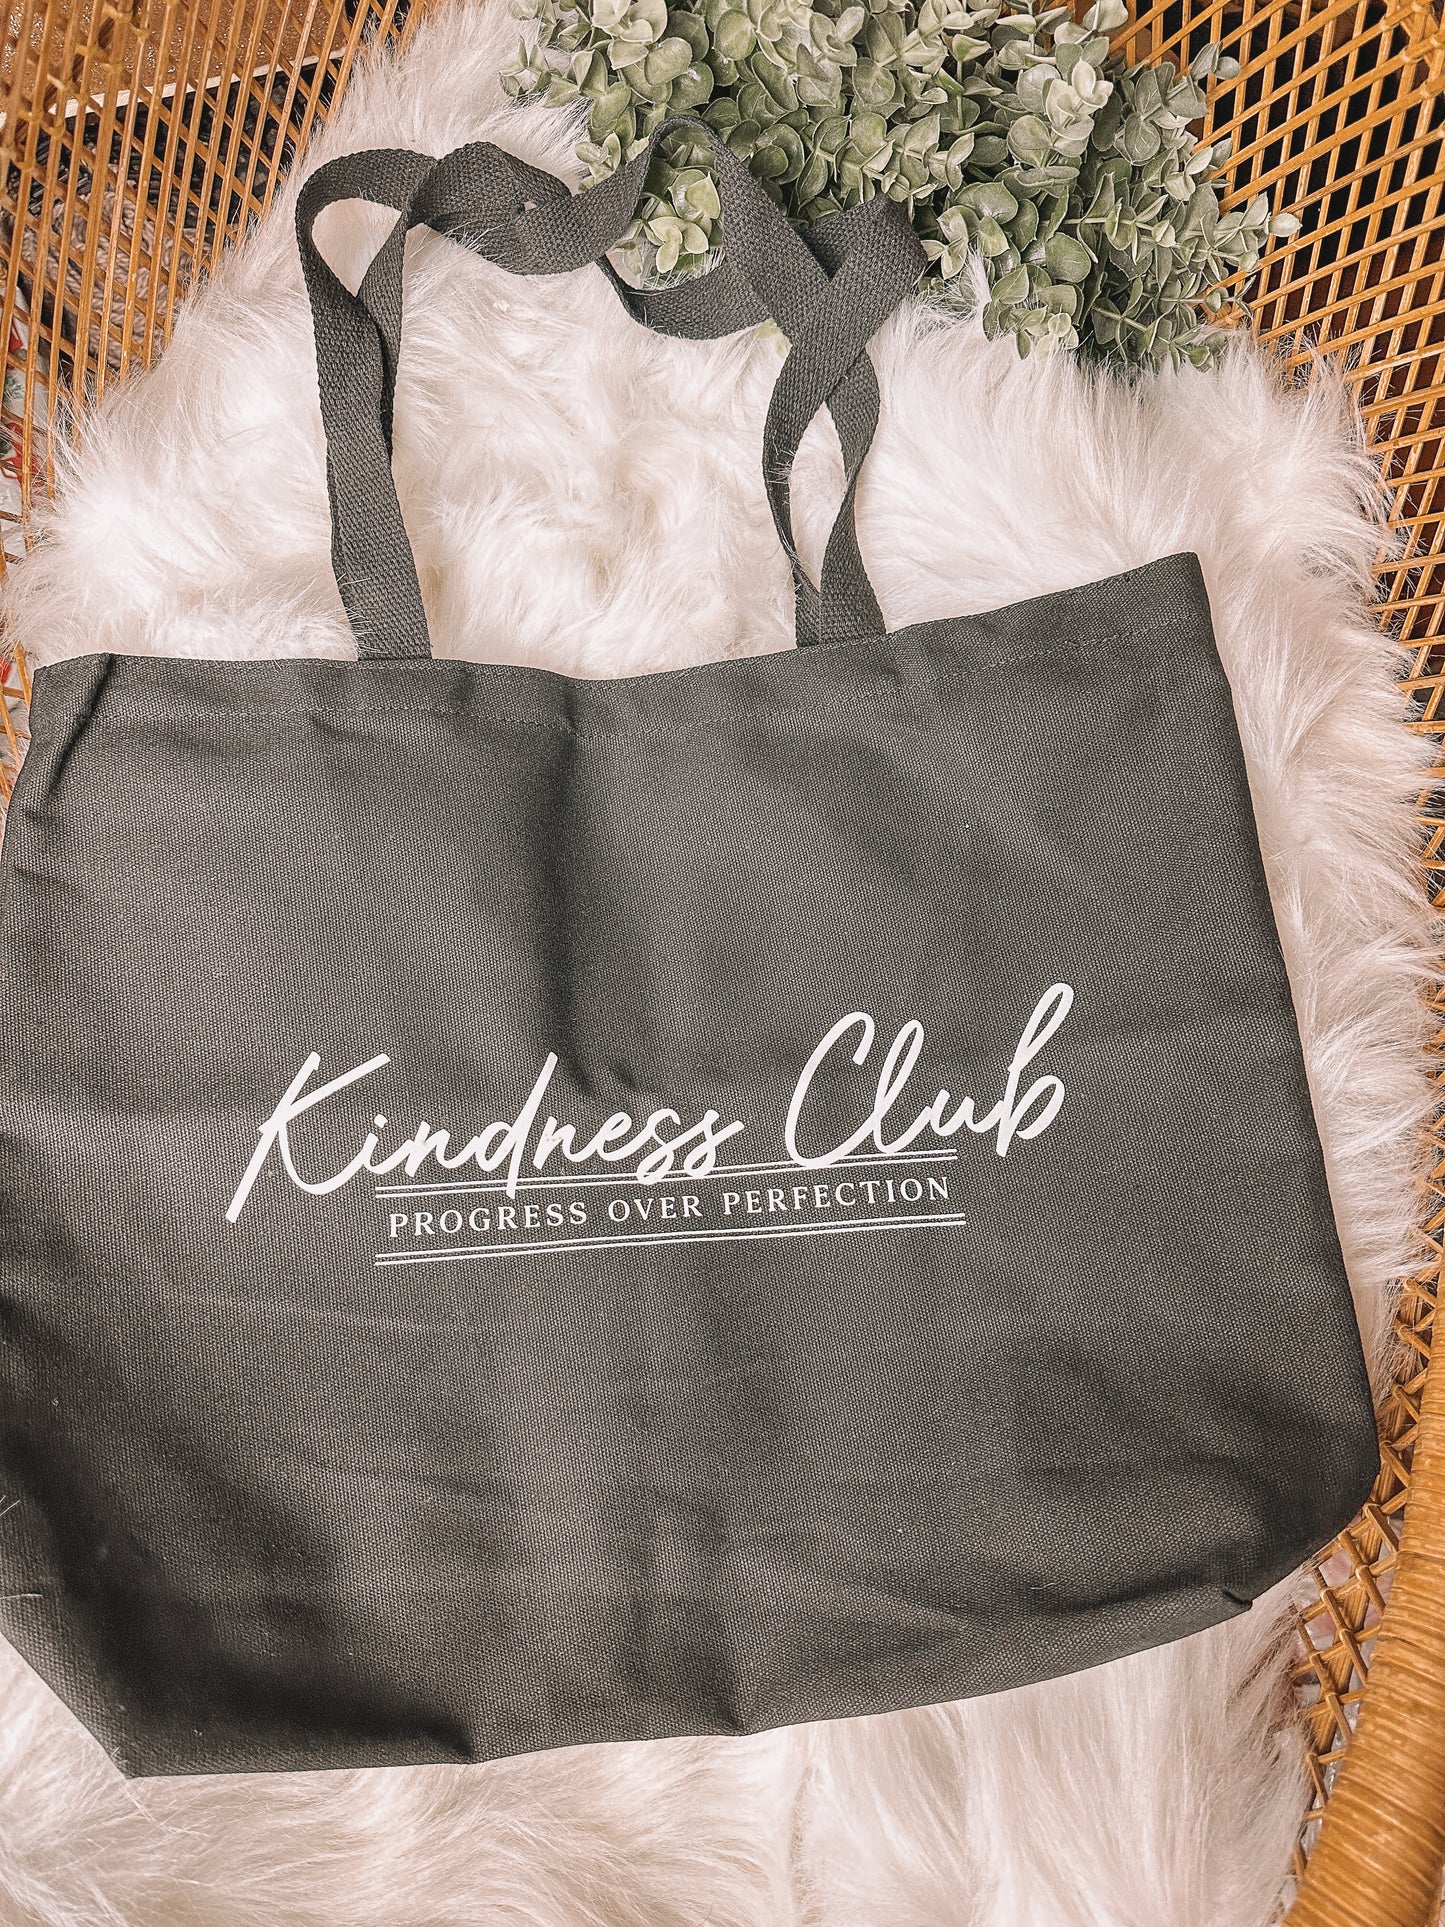 The BRUNETTE Label - Kindness Club Bag